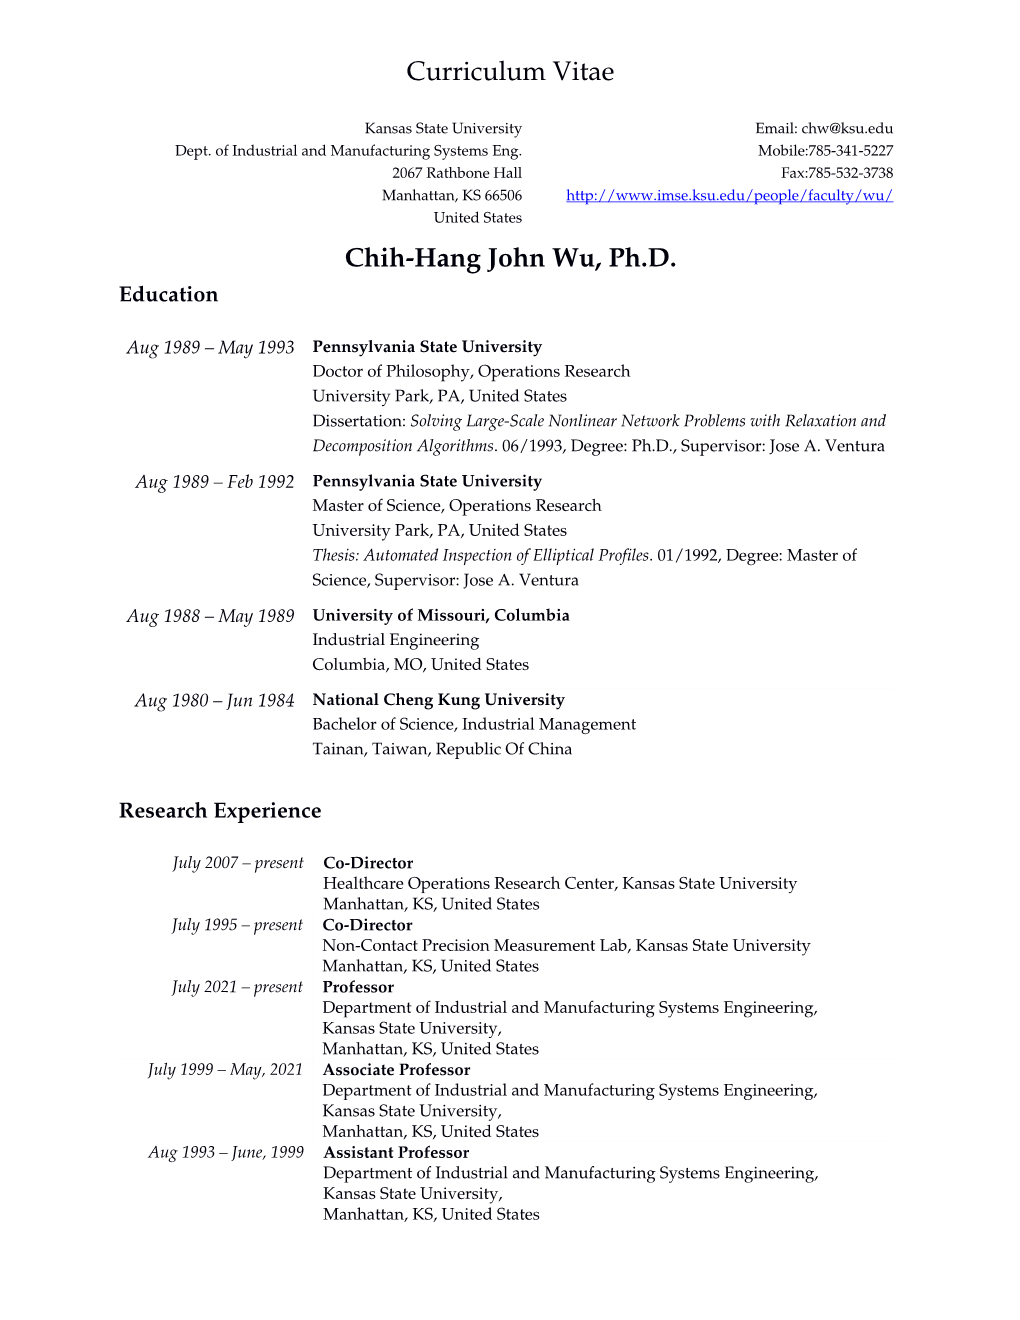 Curriculum Vitae Chih-Hang John Wu, Ph.D